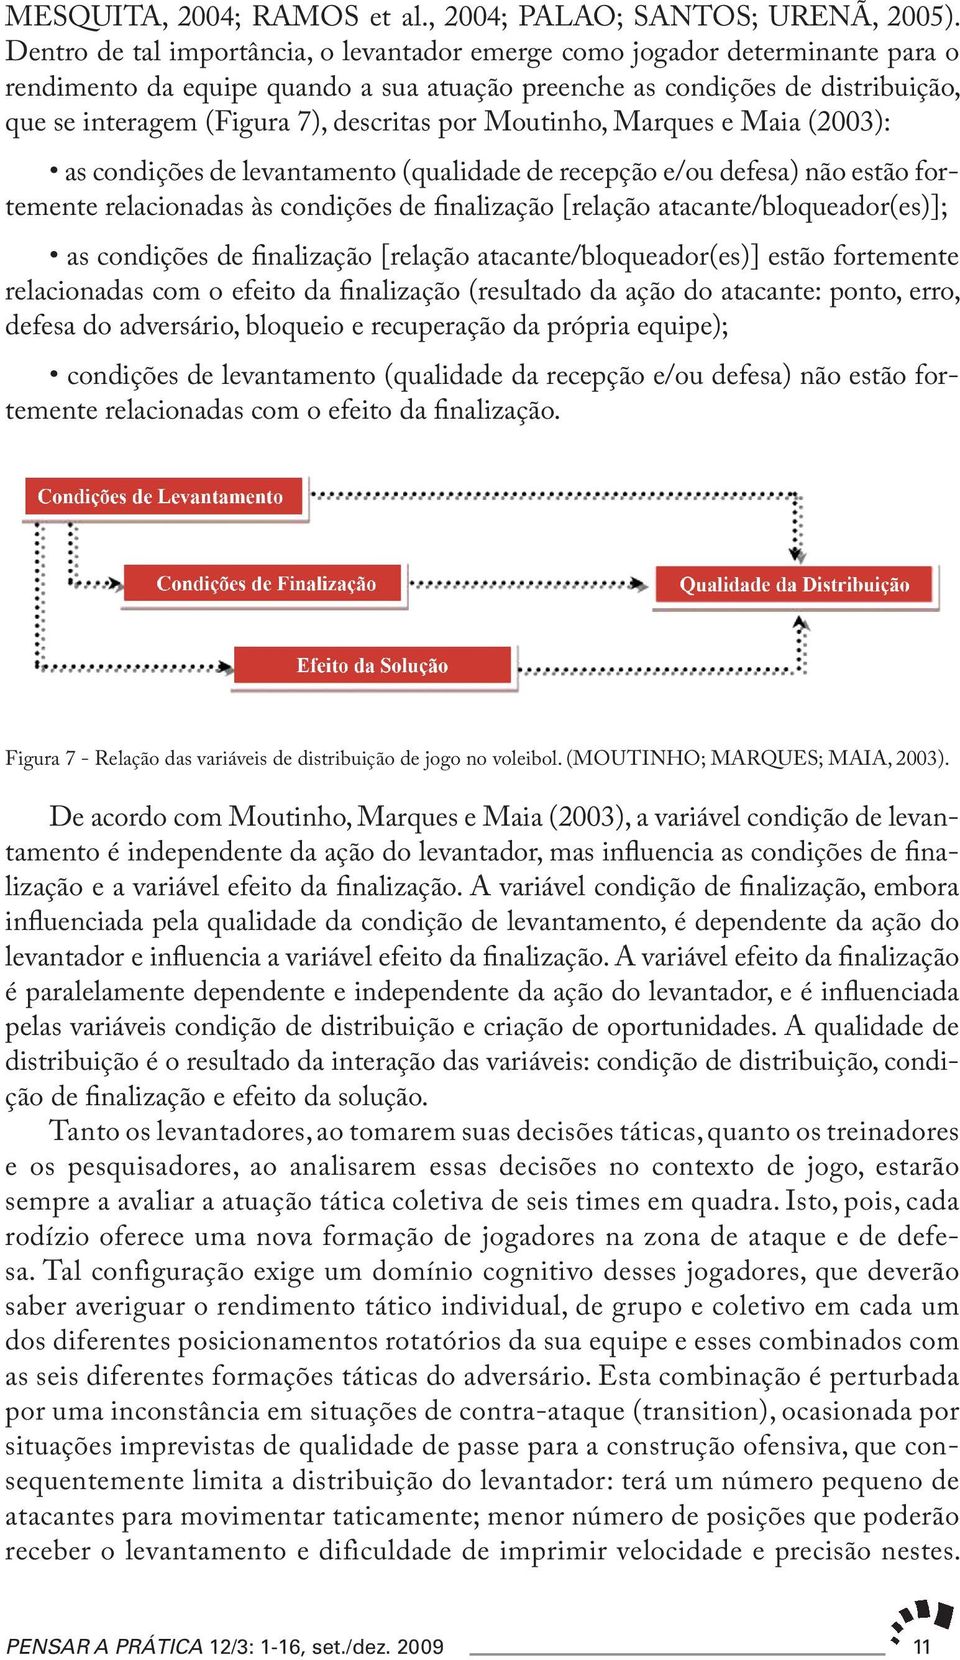 por Moutinho, Marques e Maia (2003): as condições de levantamento (qualidade de recepção e/ou defesa) não estão fortemente relacionadas às condições de finalização [relação atacante/bloqueador(es)];